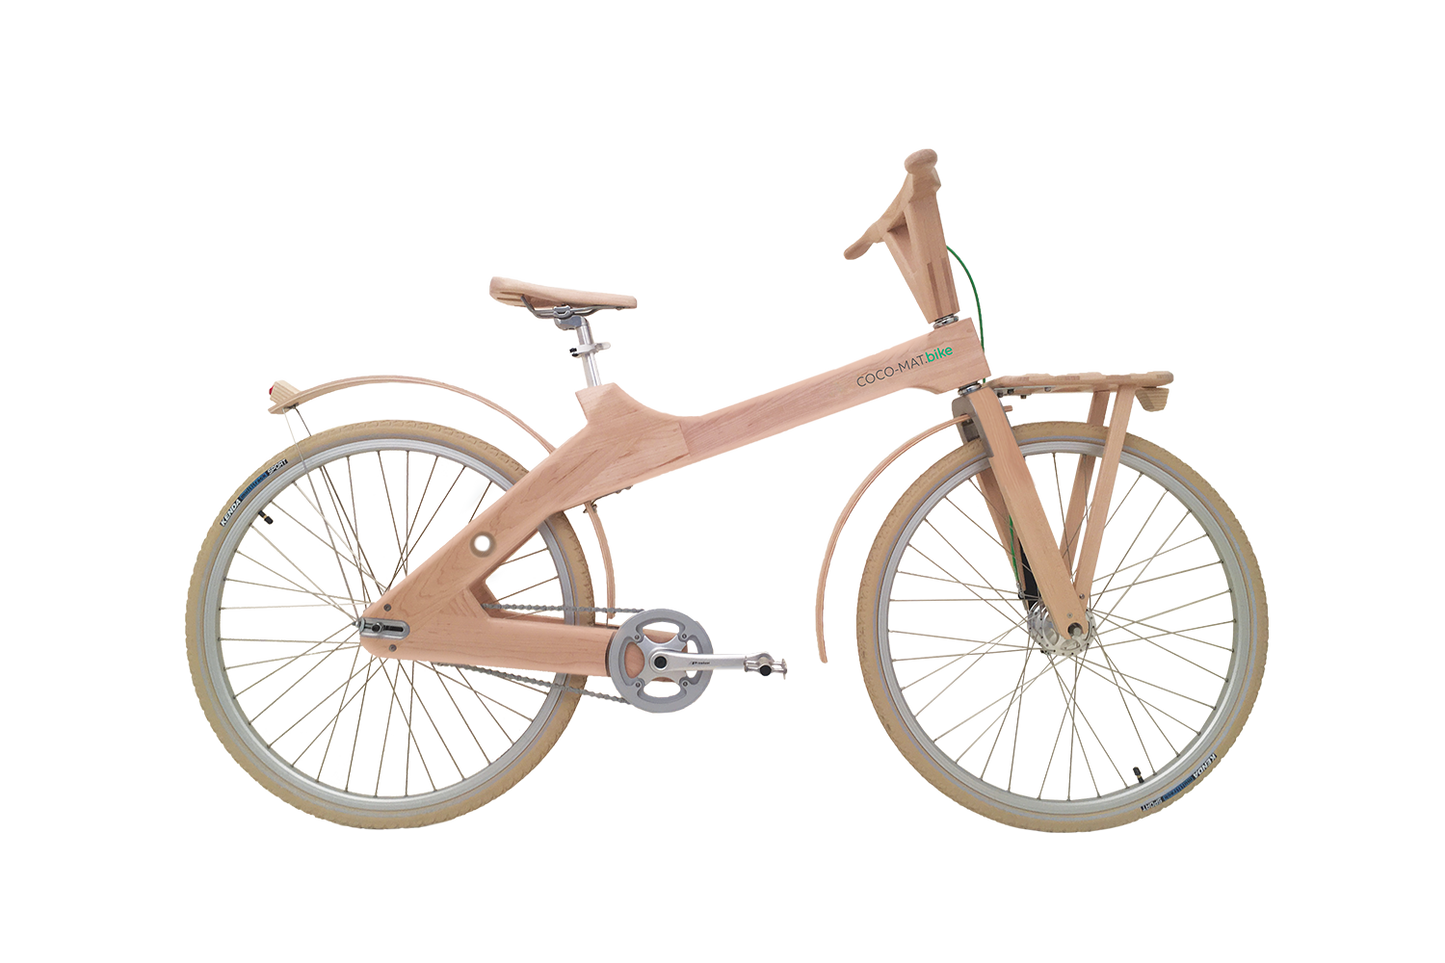 ODYSSEUS 2-SPEED 28" - A revolutionary city bike for everyone- ergonomic design, handcrafted, wooden